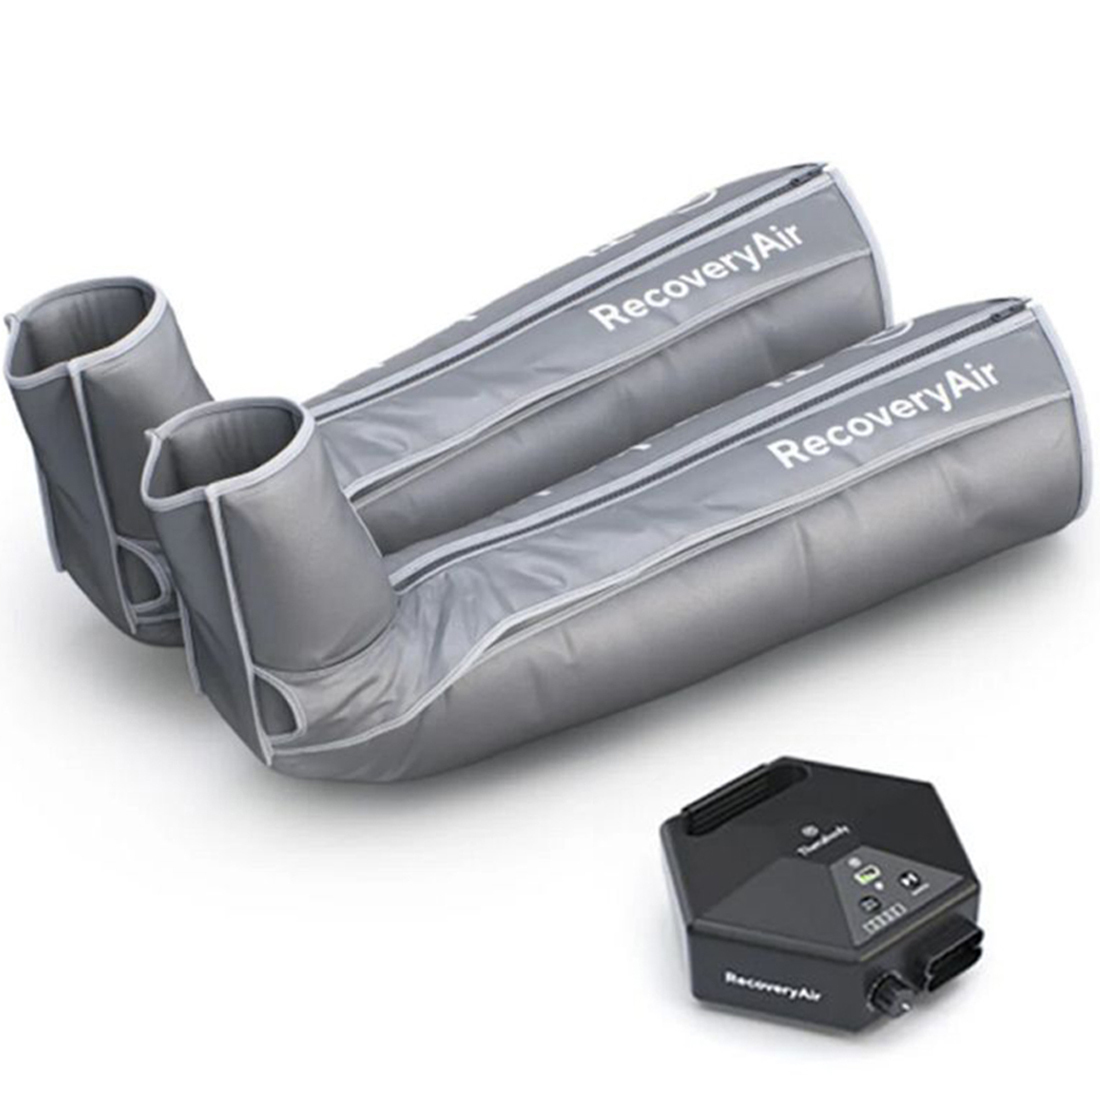 Лимфодренажный аппарат для прессотерапии RecoveryAir (Cапоги)